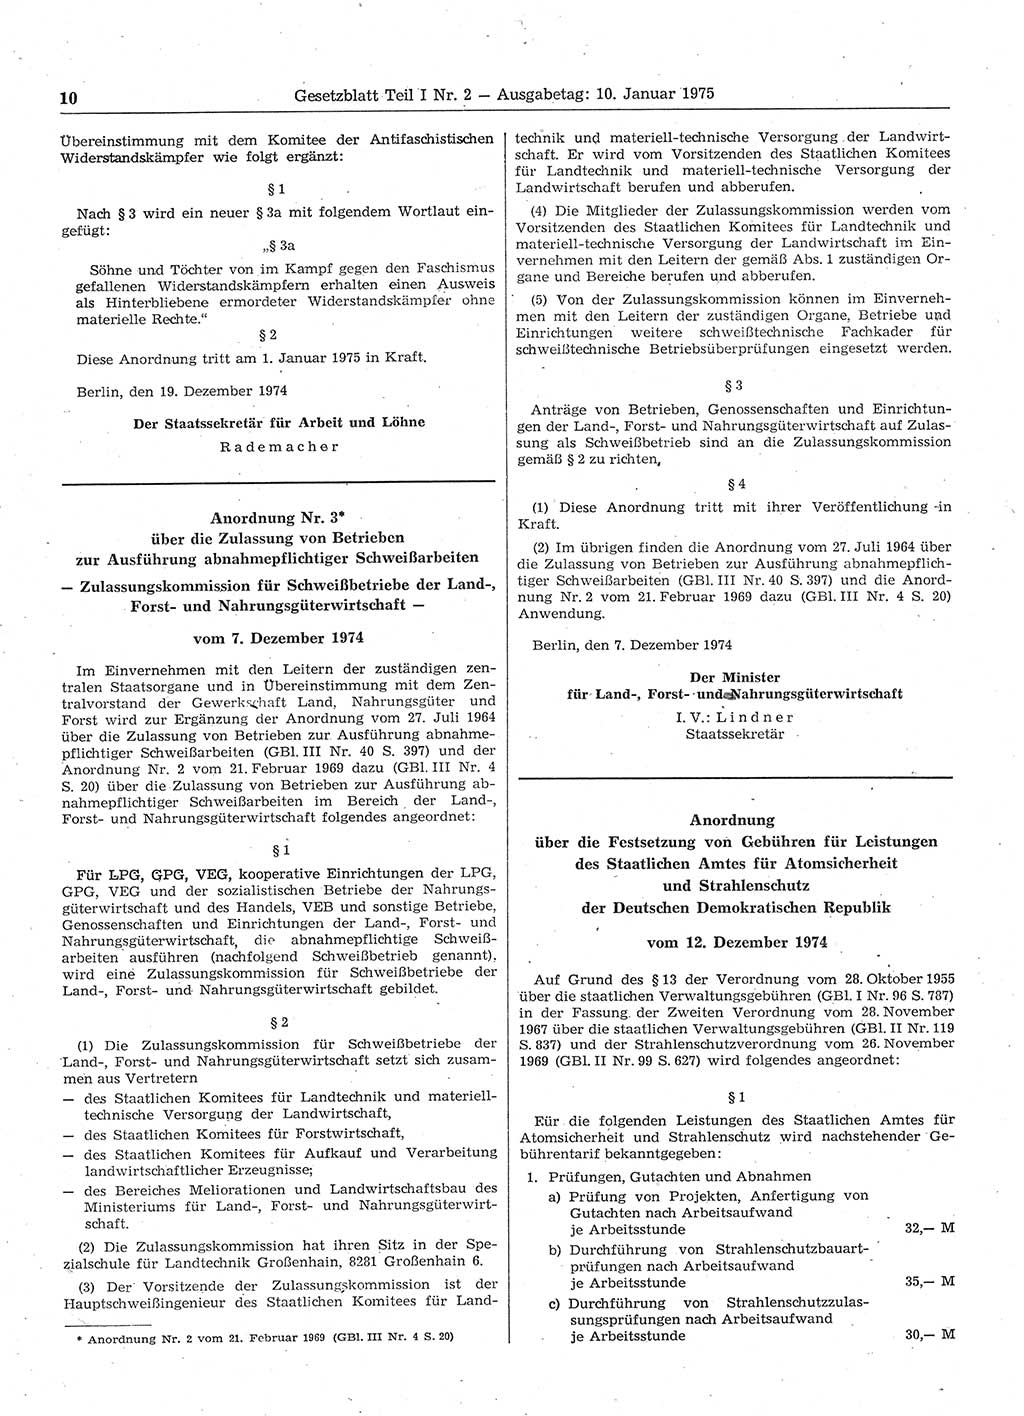 Gesetzblatt (GBl.) der Deutschen Demokratischen Republik (DDR) Teil Ⅰ 1975, Seite 10 (GBl. DDR Ⅰ 1975, S. 10)